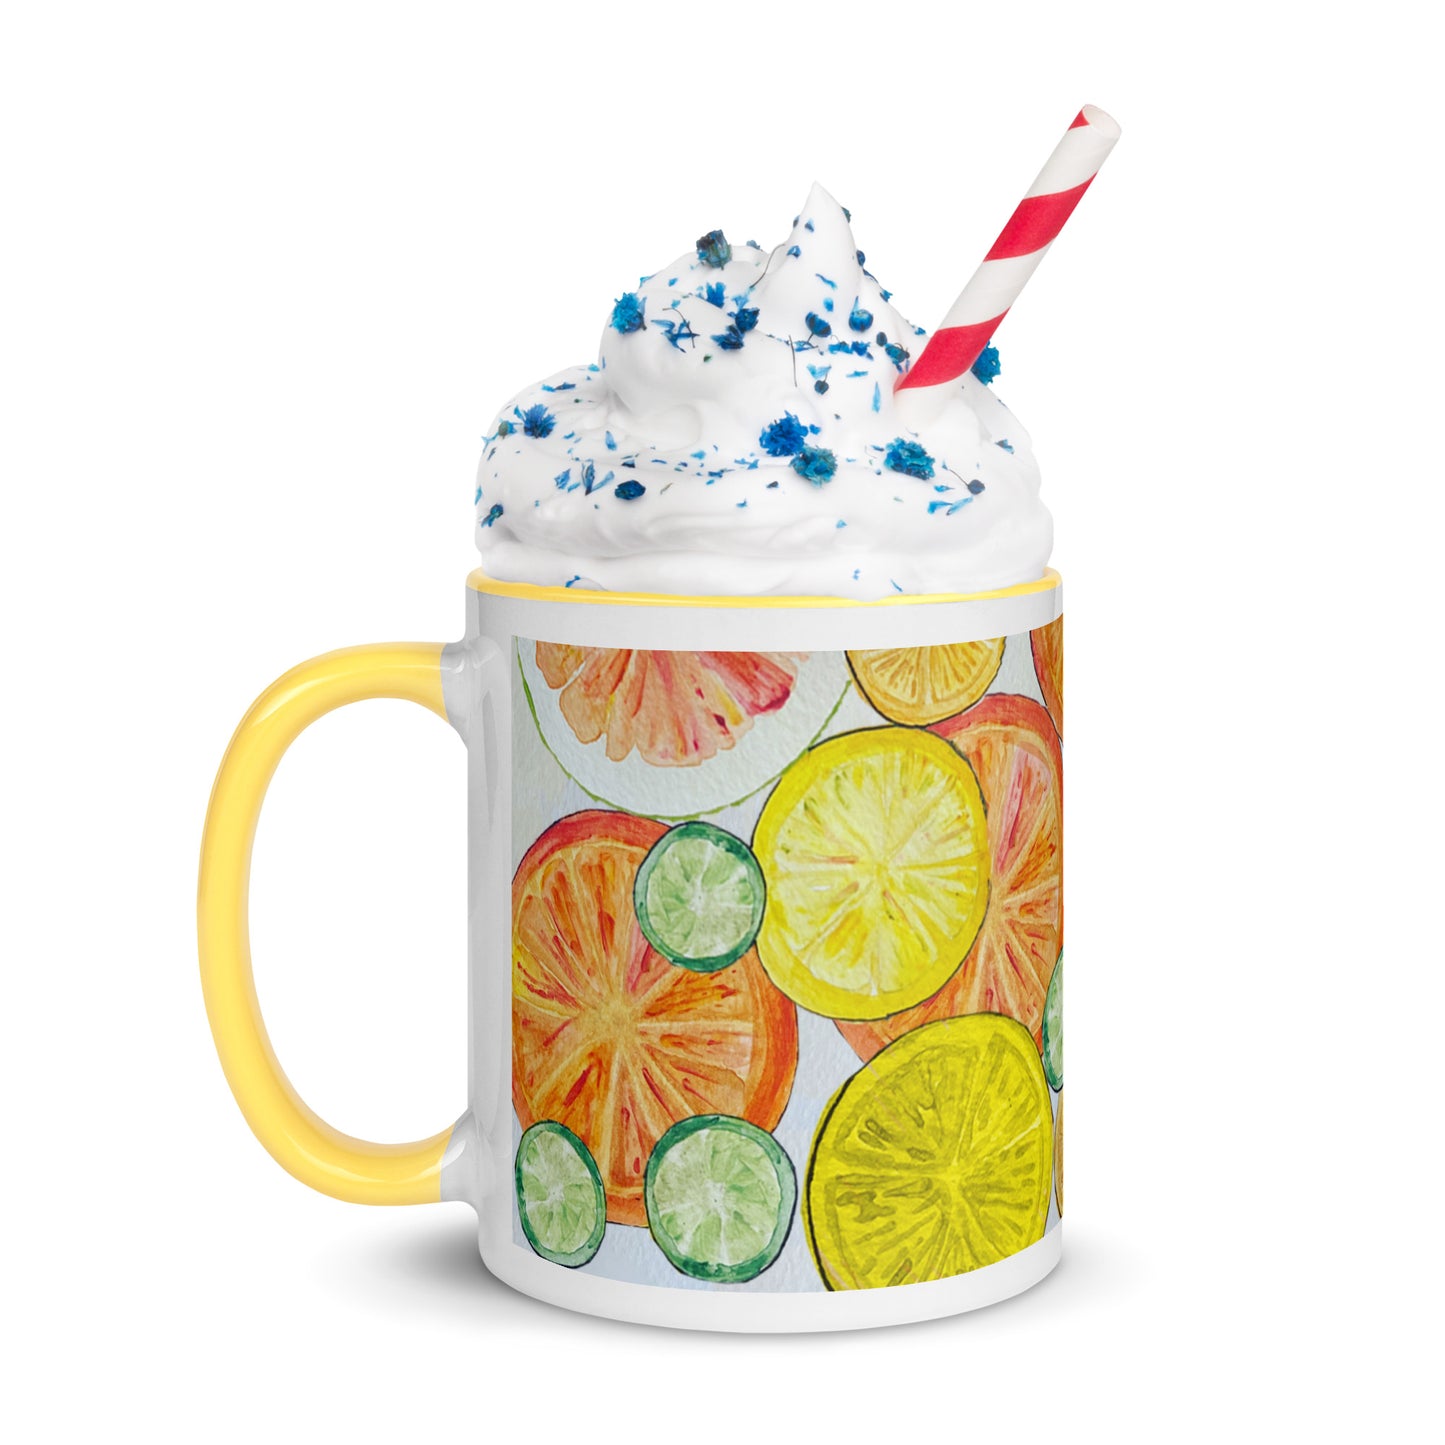 Citrus Mug with Color Inside